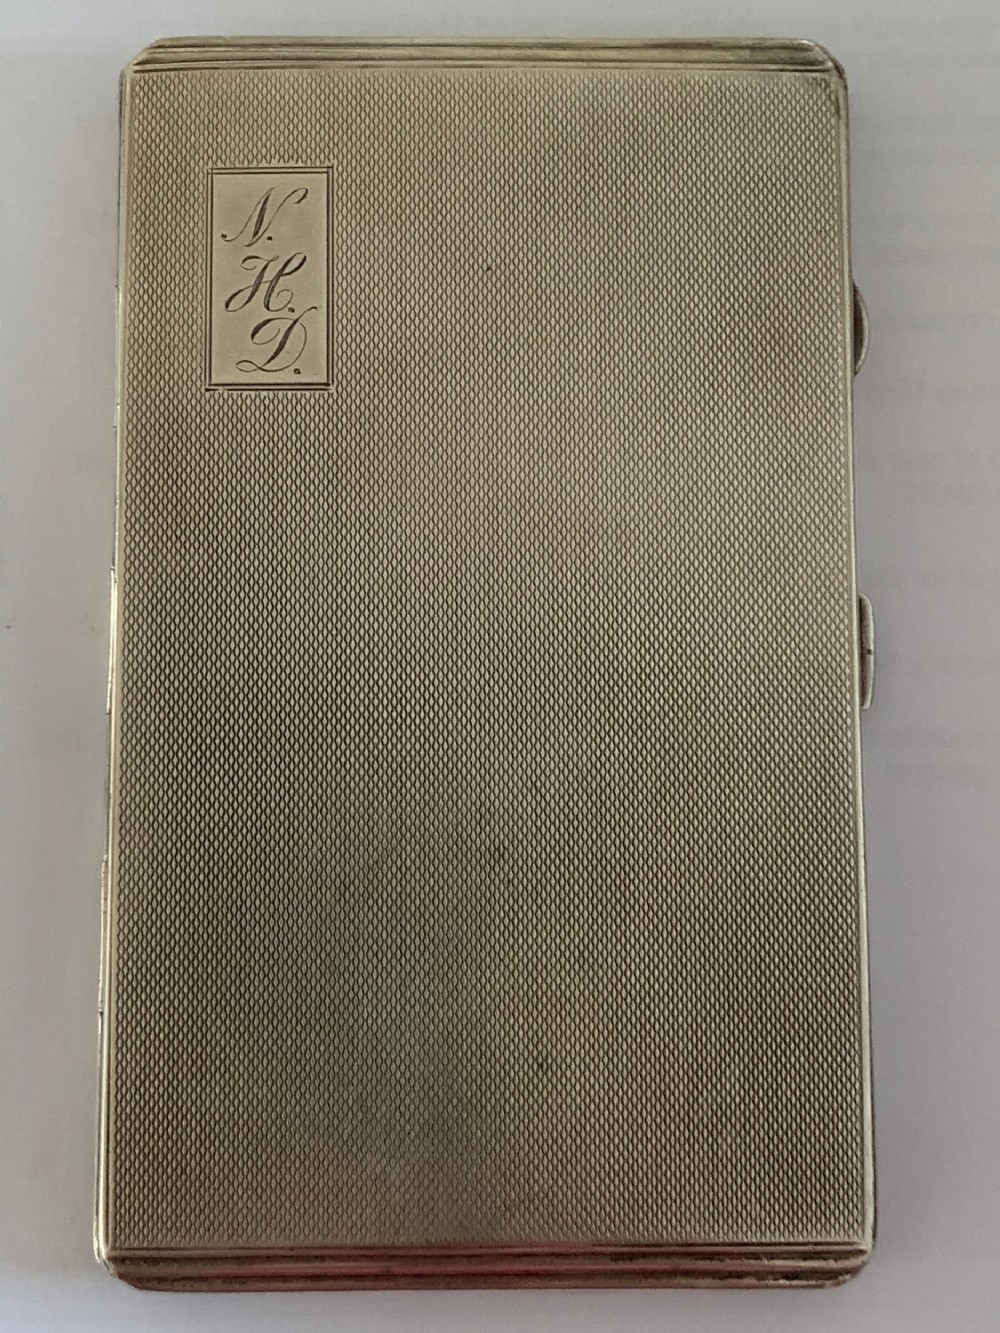 silver cigarette case